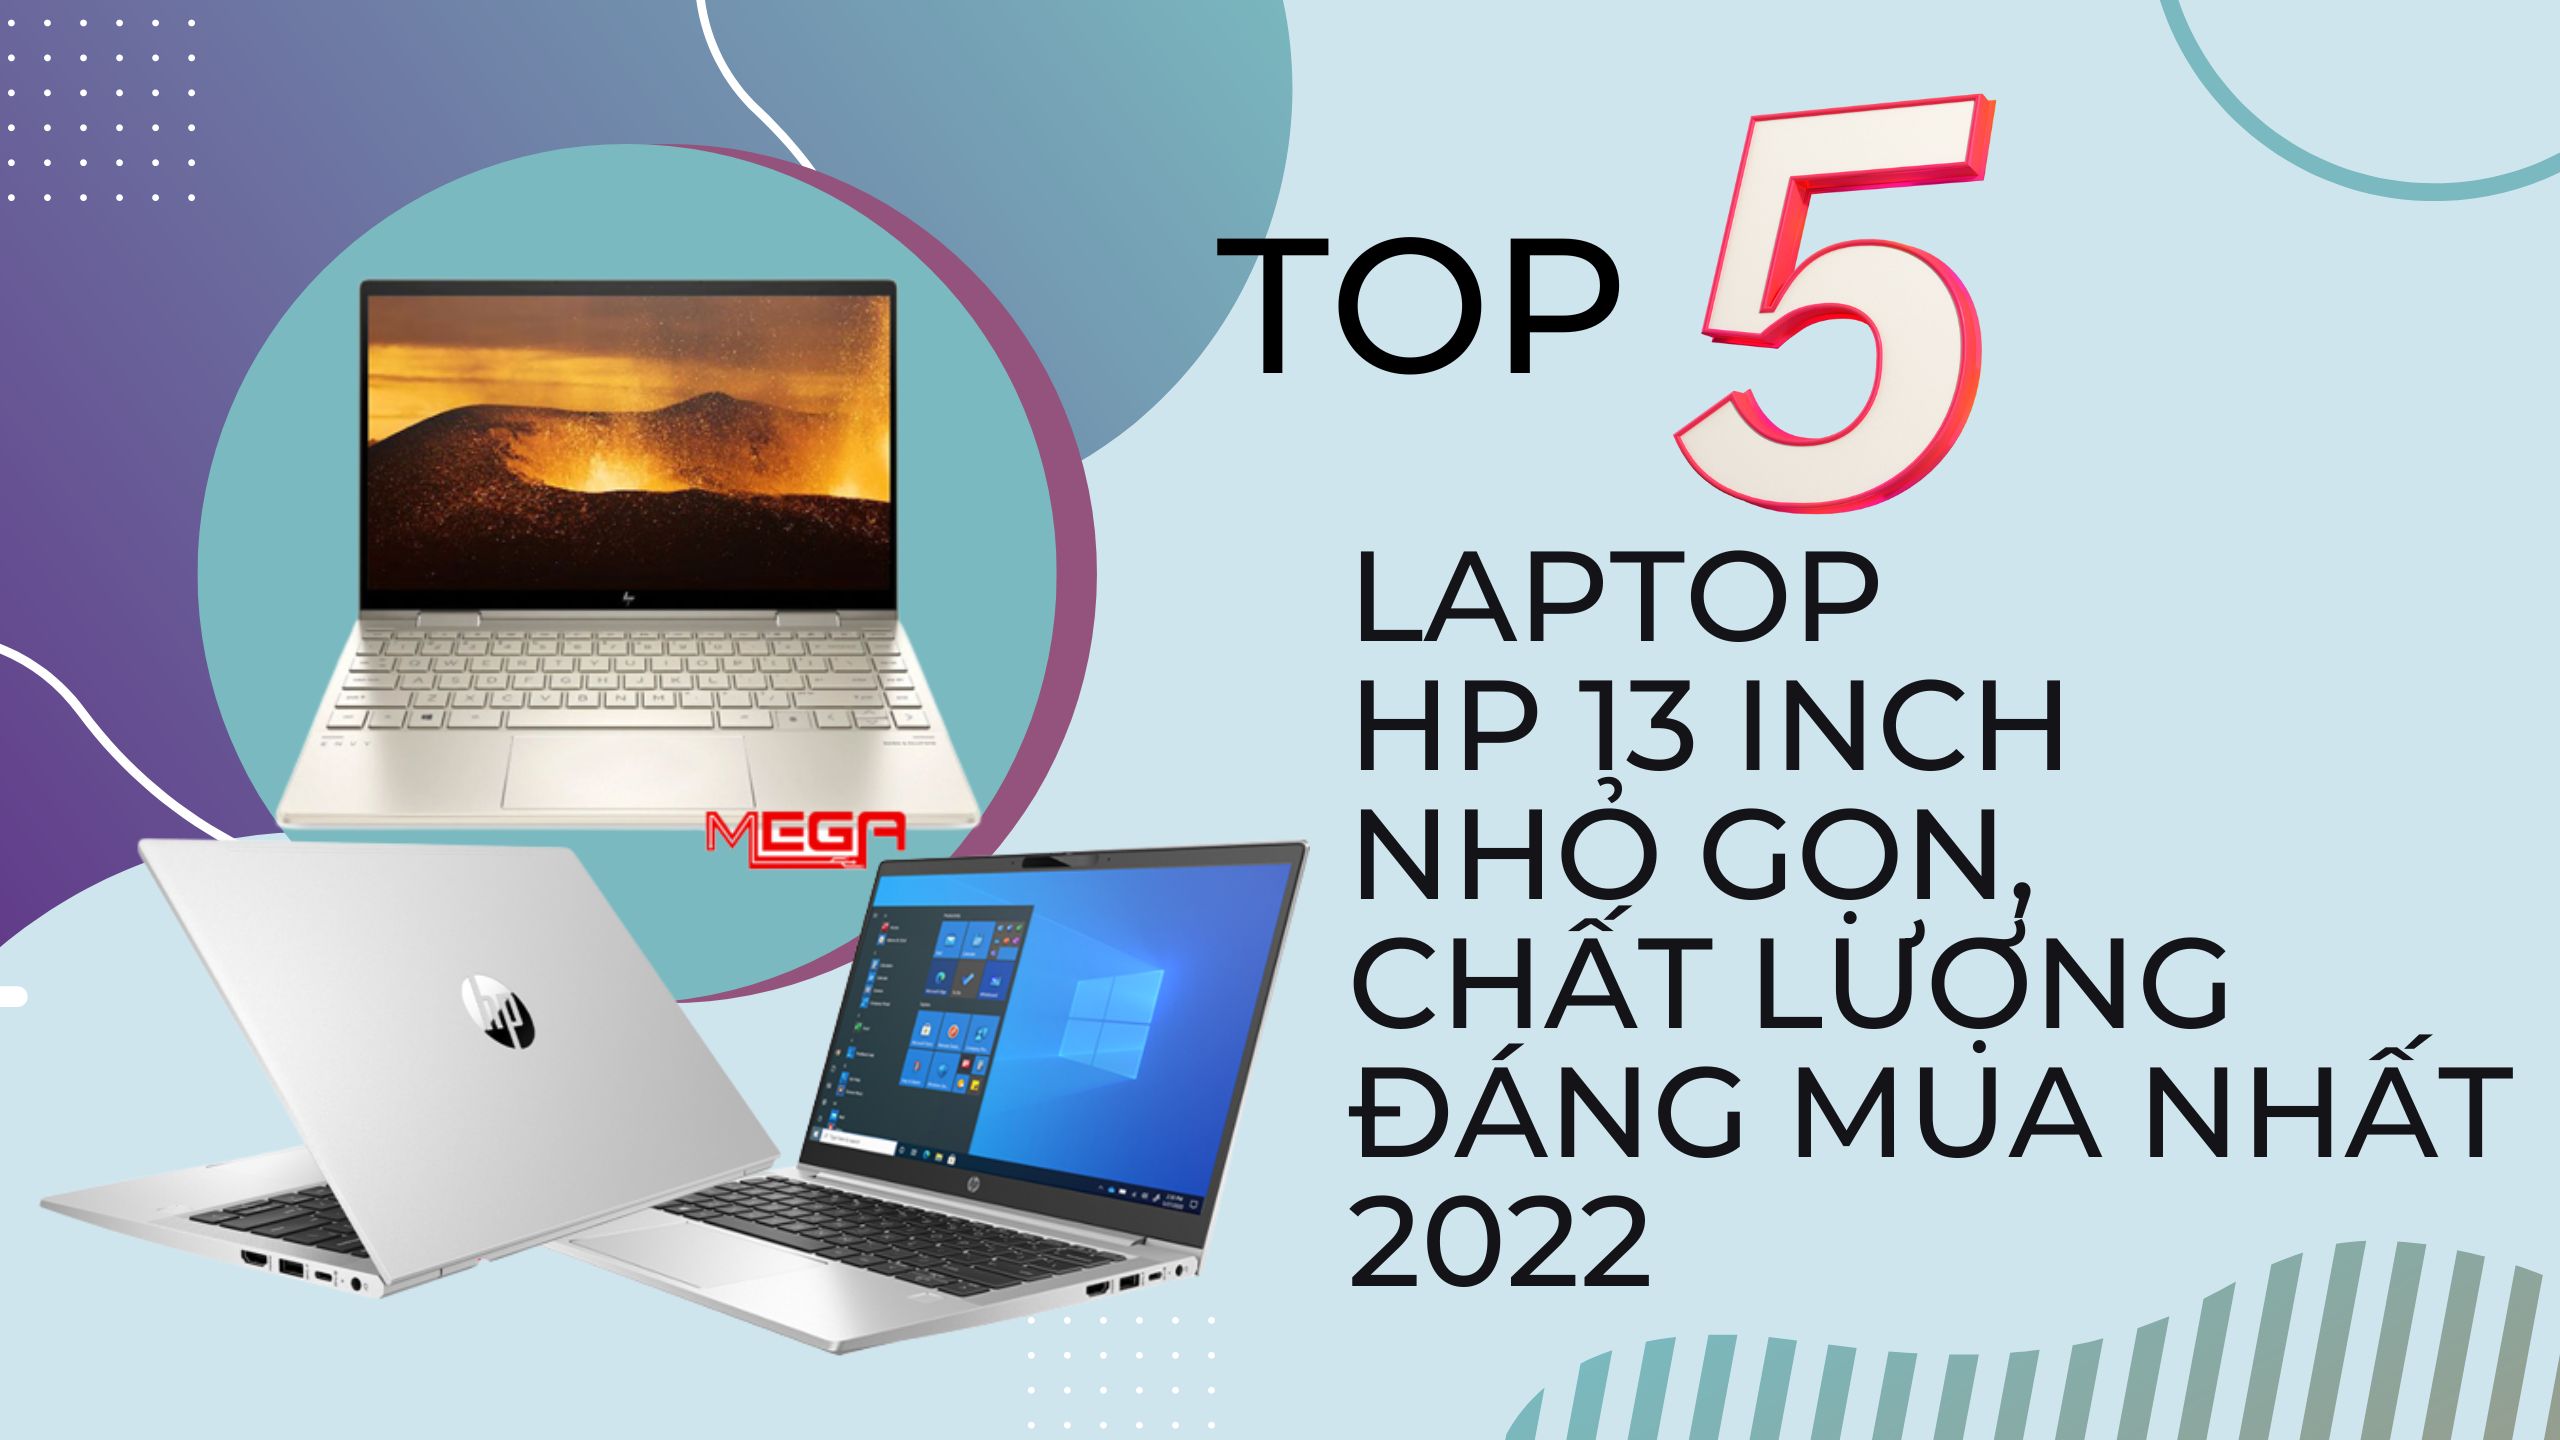 Top 5 laptop HP 13 inch nhỏ gọn, cấu hình ổn định đáng mua nhất 2023